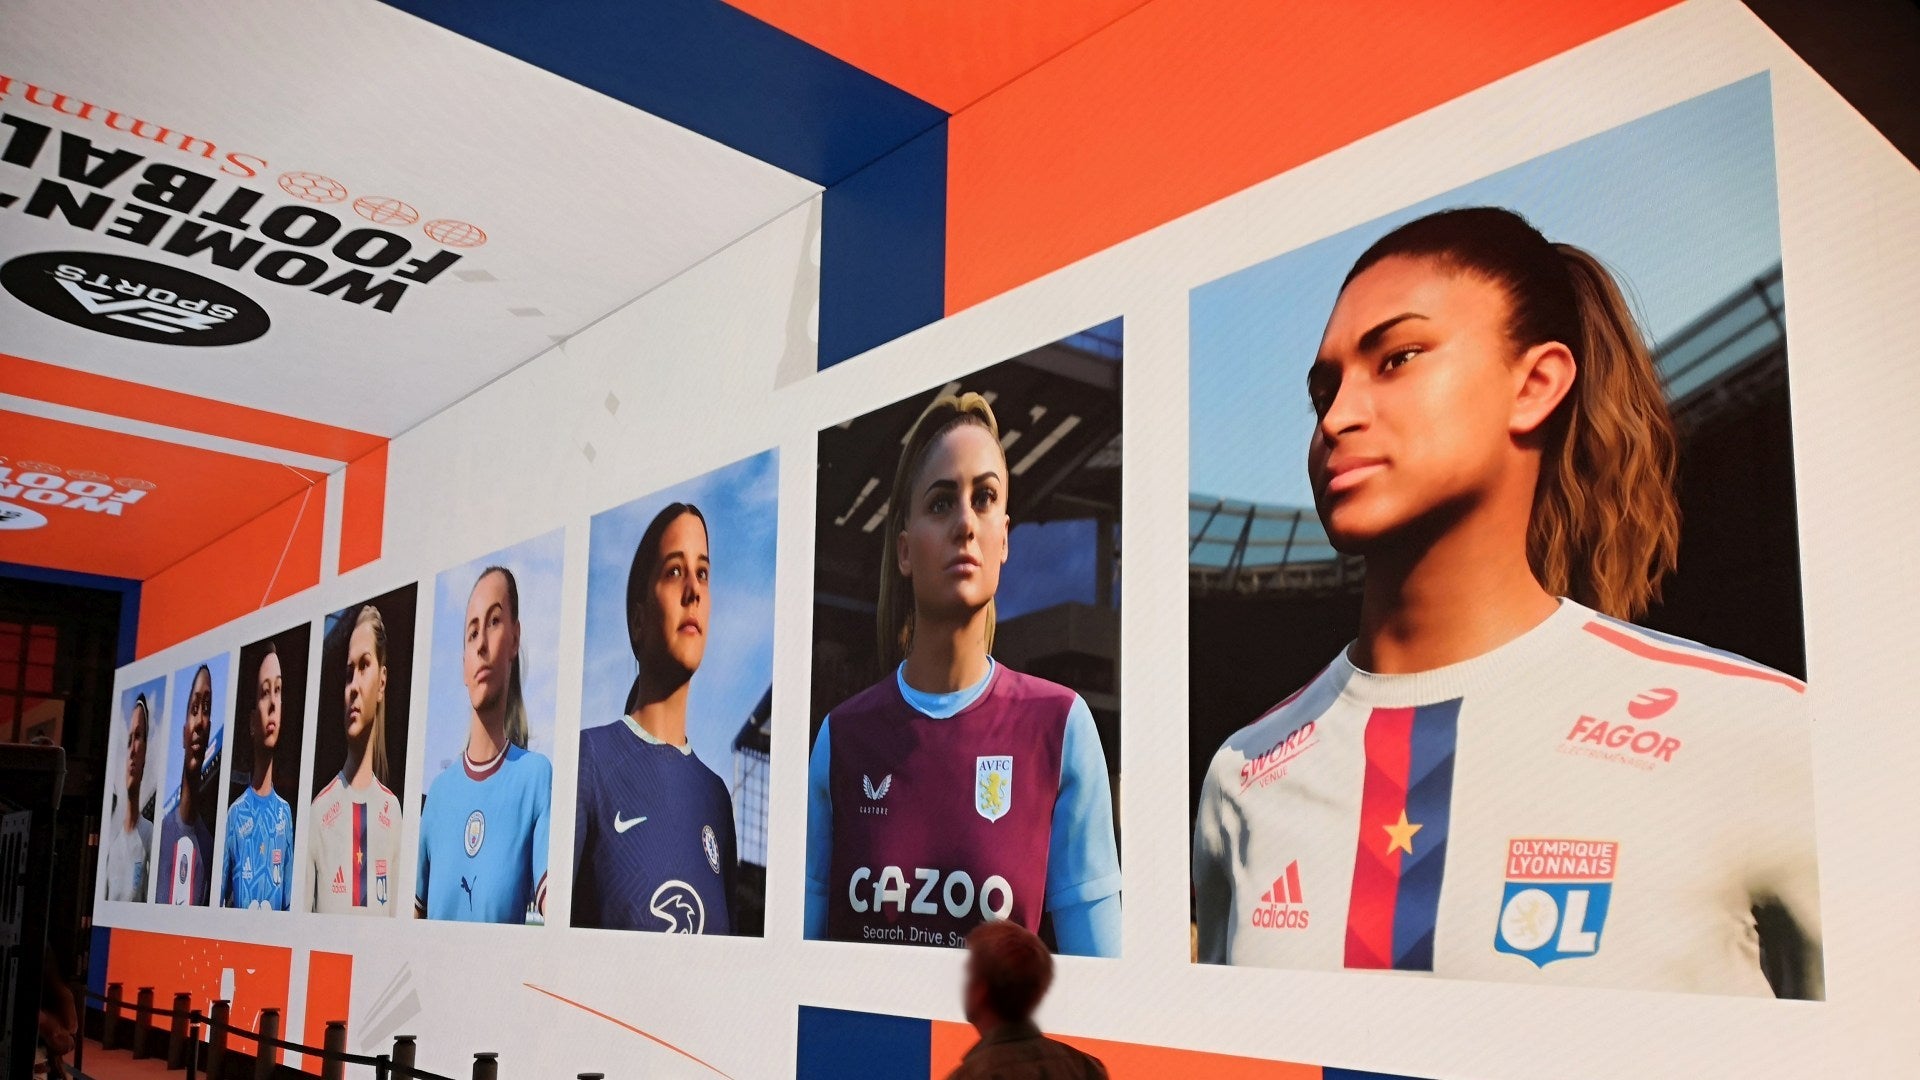 Bilder zu EA SPORTS Women’s Football Summit - Fokus auf den Frauenfußball